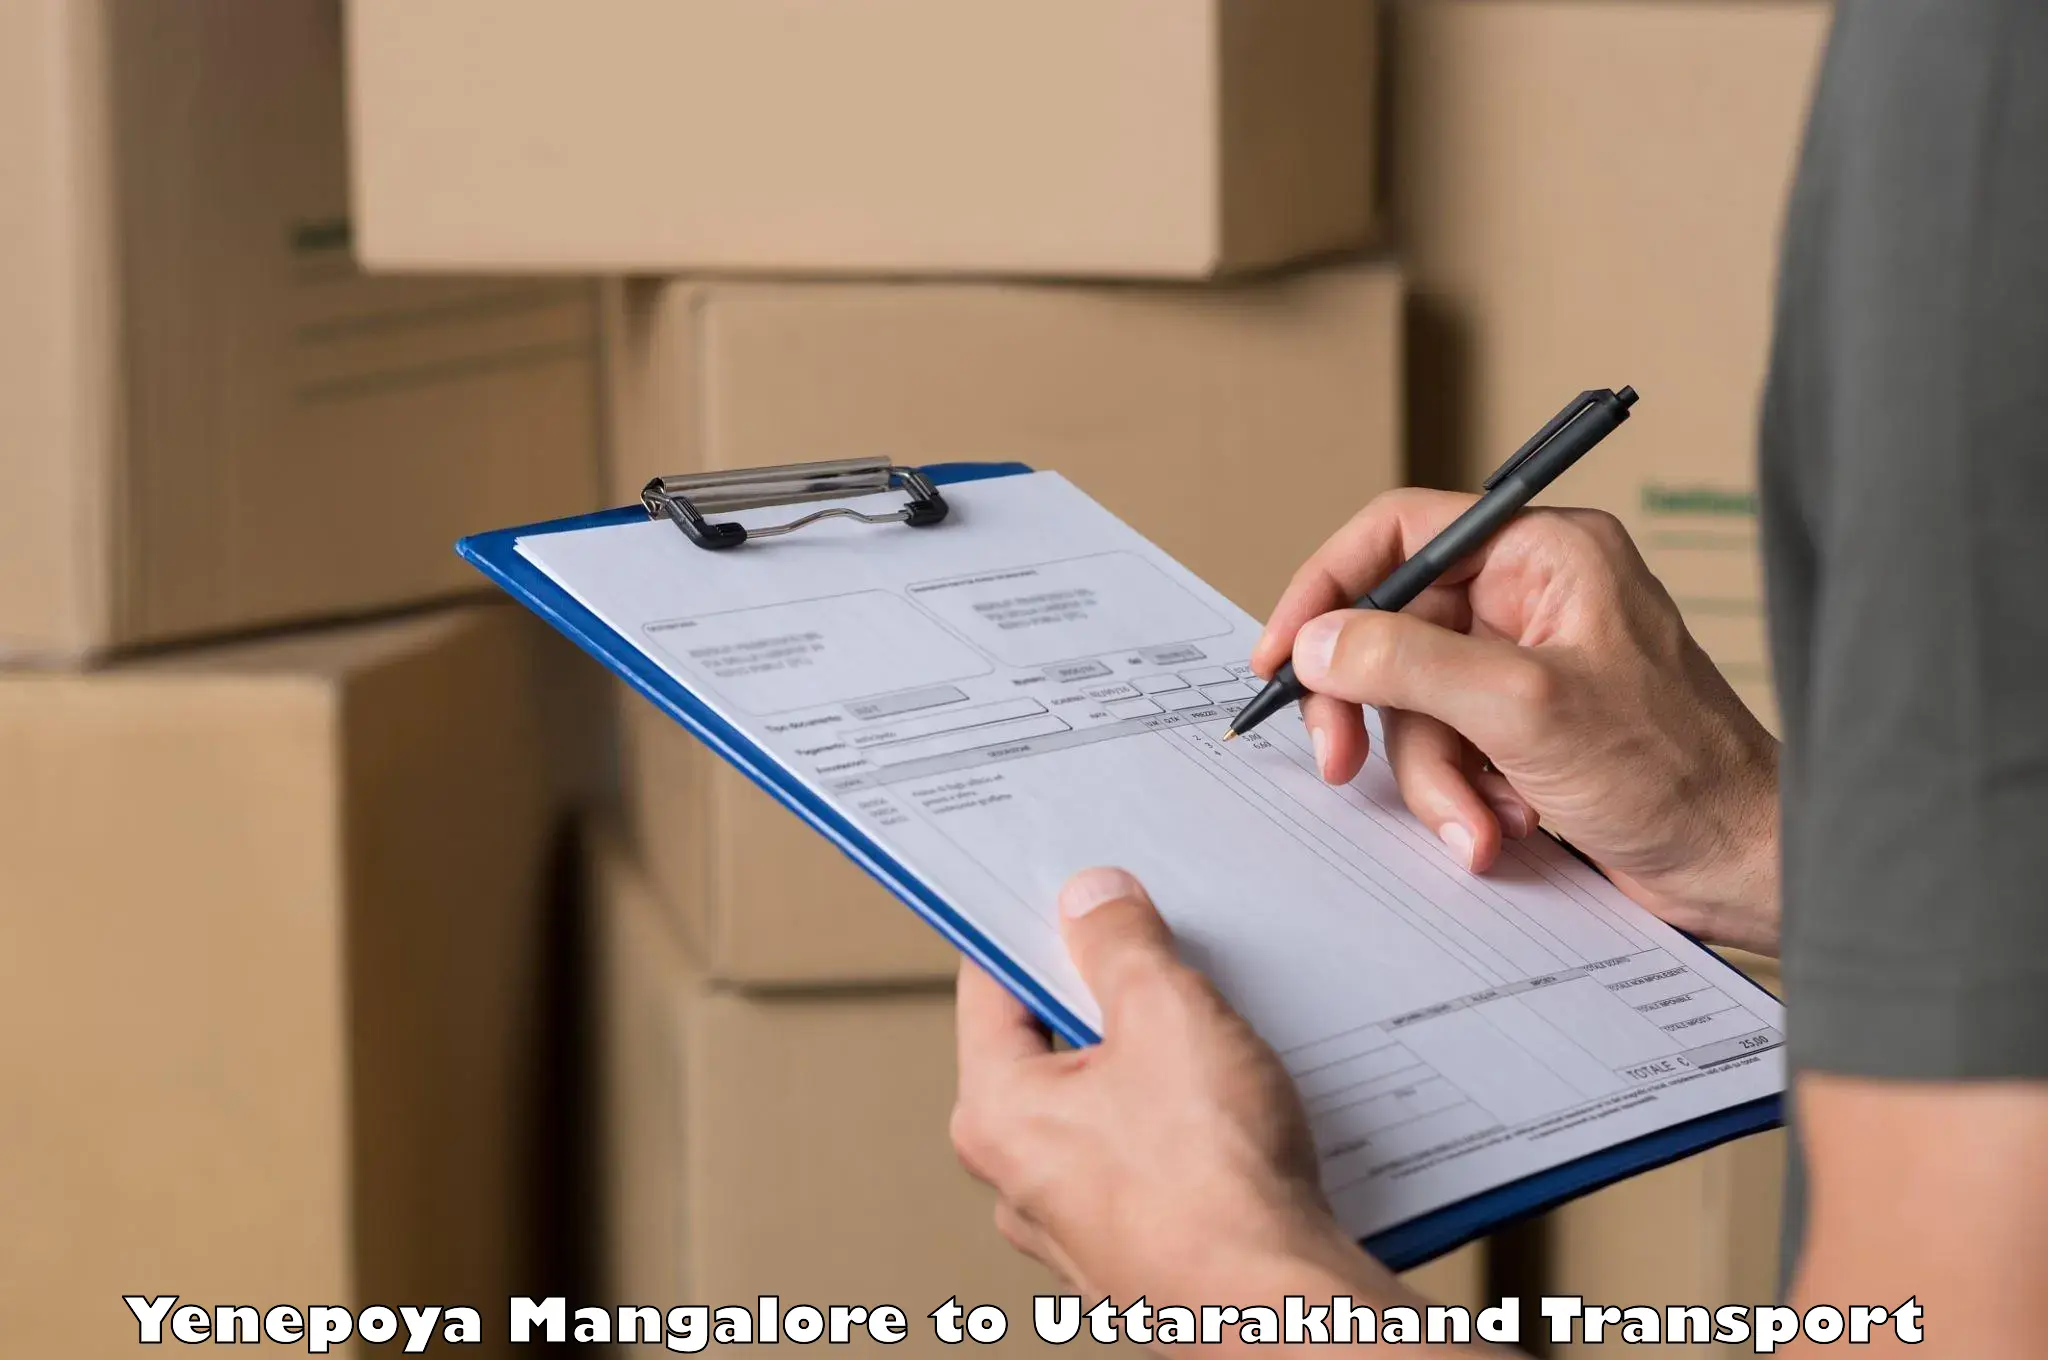 Vehicle parcel service Yenepoya Mangalore to Rudraprayag